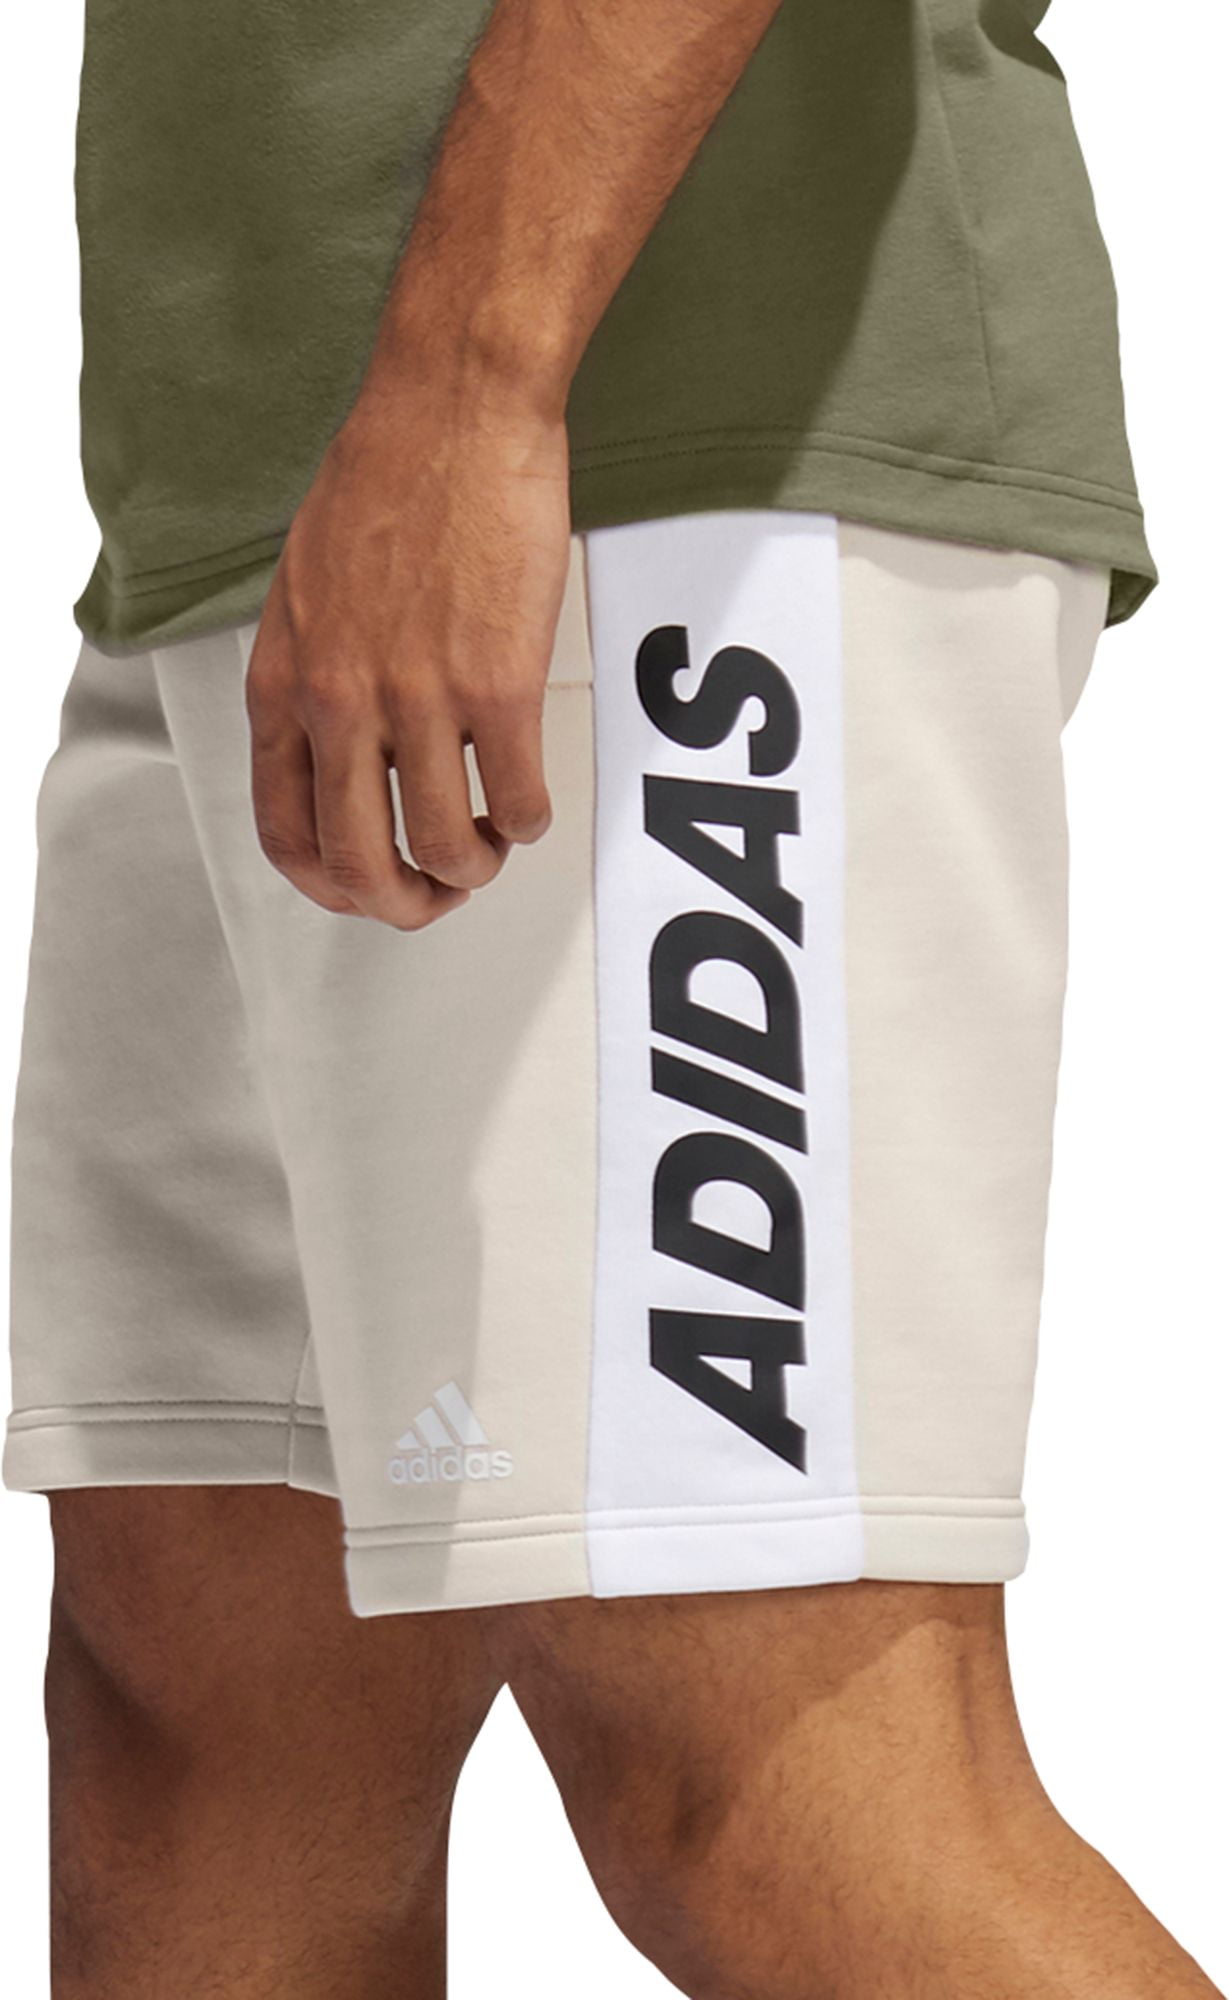 men's adidas fleece shorts